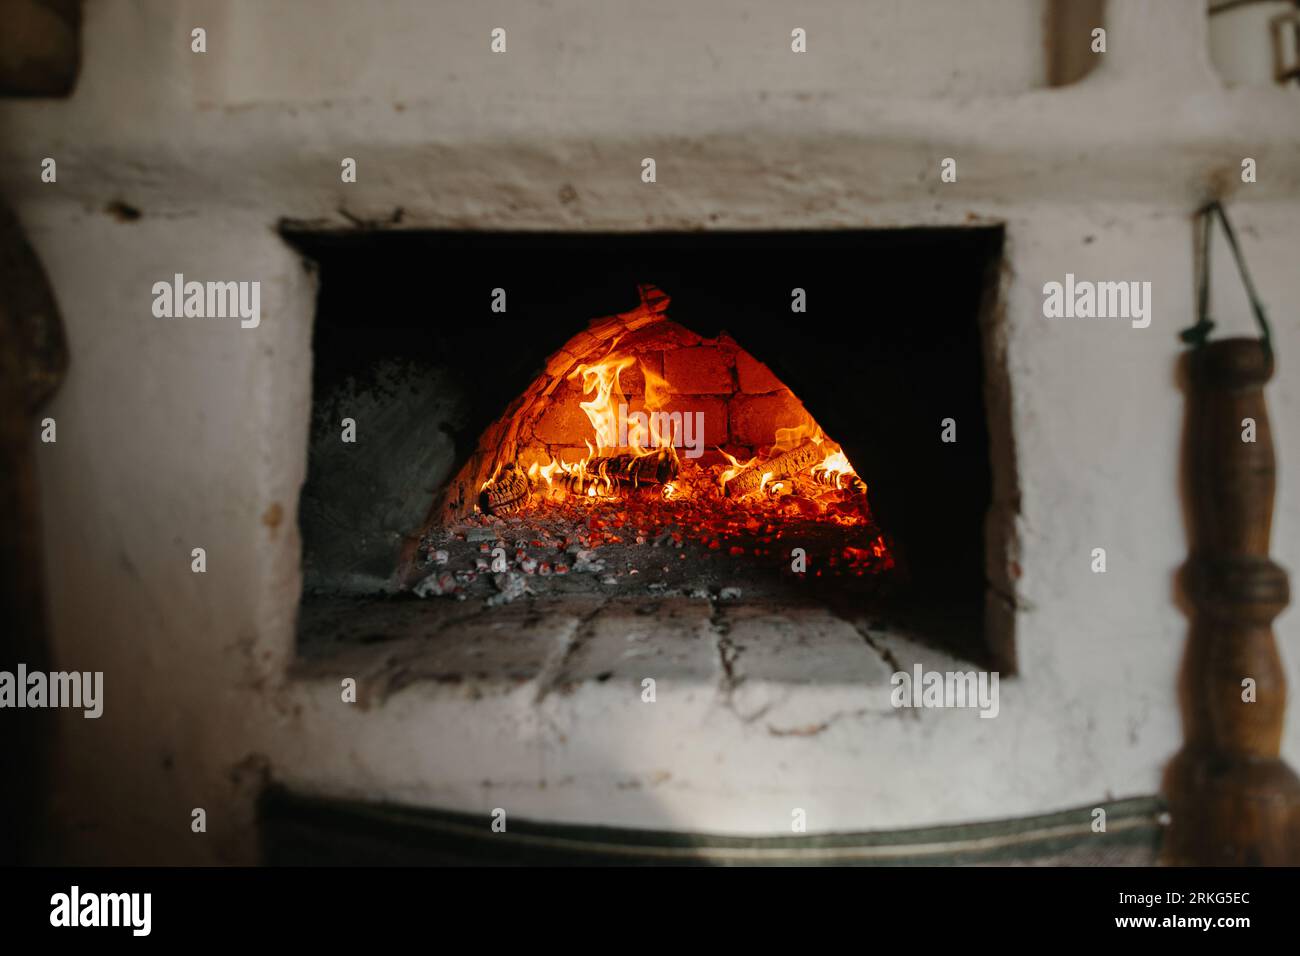 Ukrainischer traditioneller Ofen im Haus. Brennholz brennt im Ofen, Vorbereitung zum Brotbacken. Stockfoto